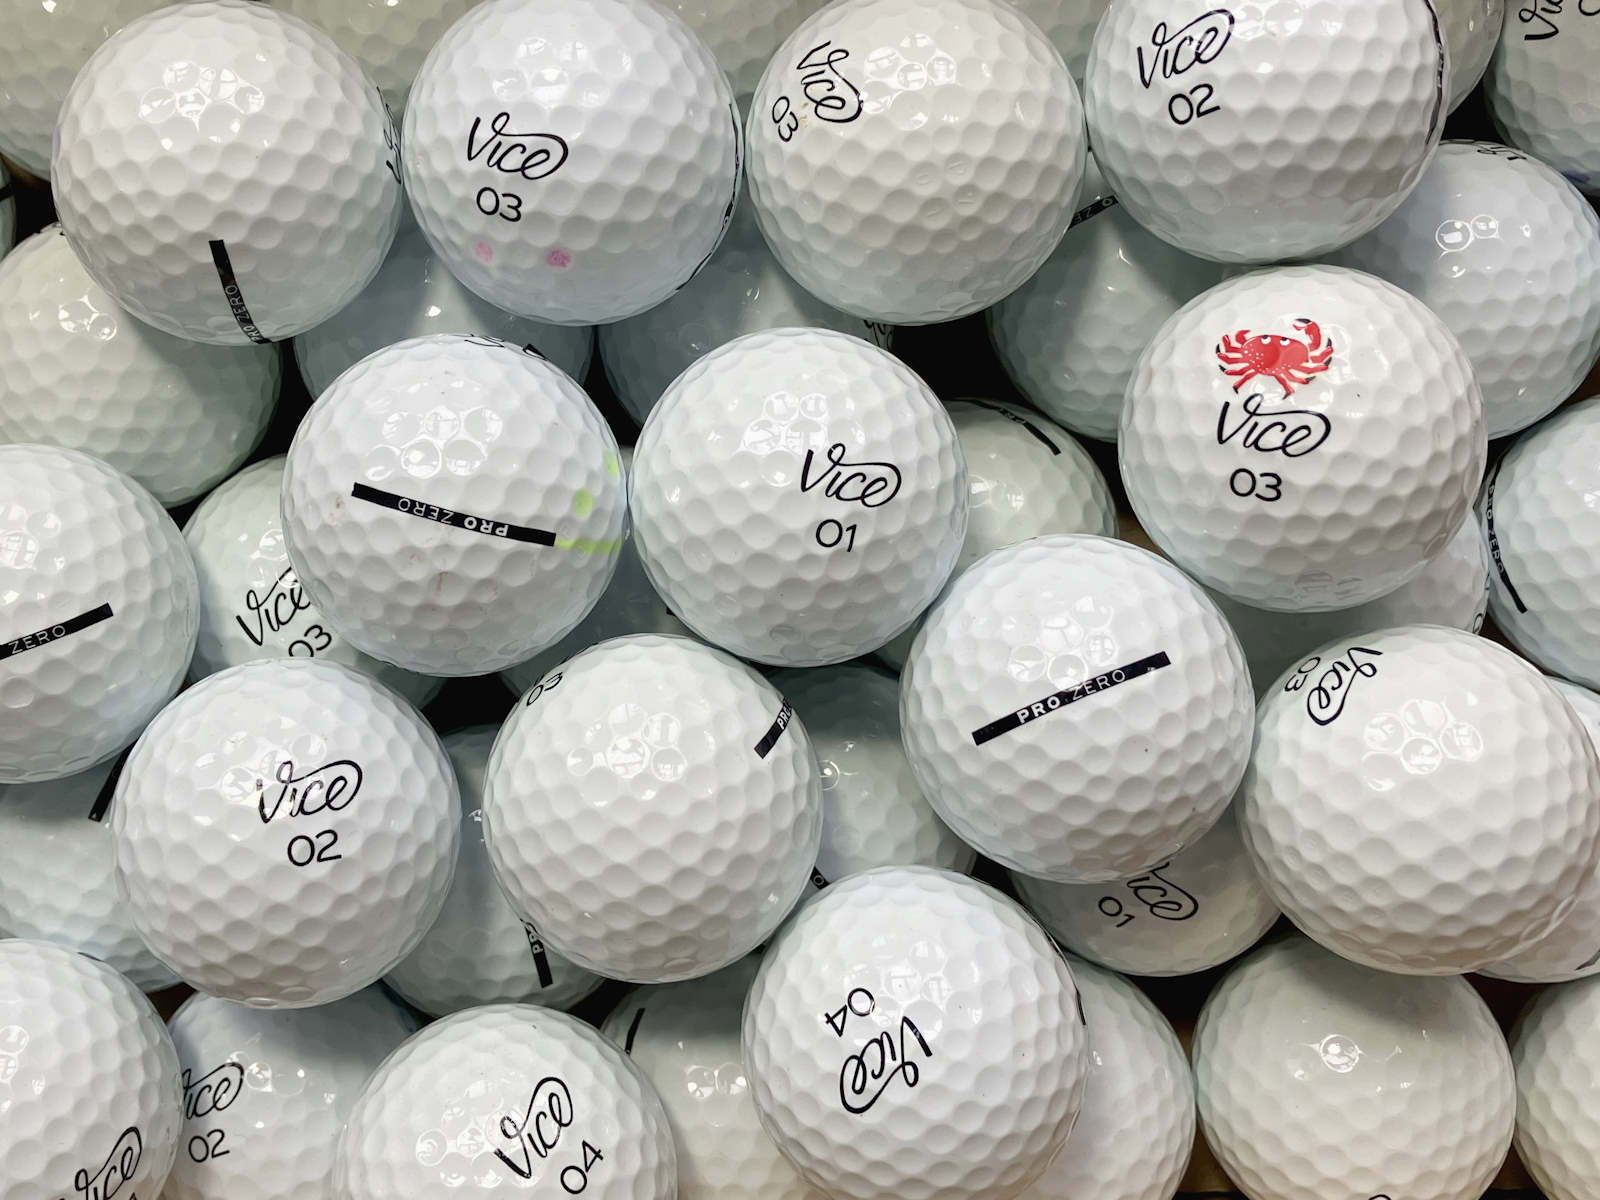 Vice Pro Zero Lakeballs - gebrauchte Pro Zero Golfbälle AAA/AAAA-Qualität